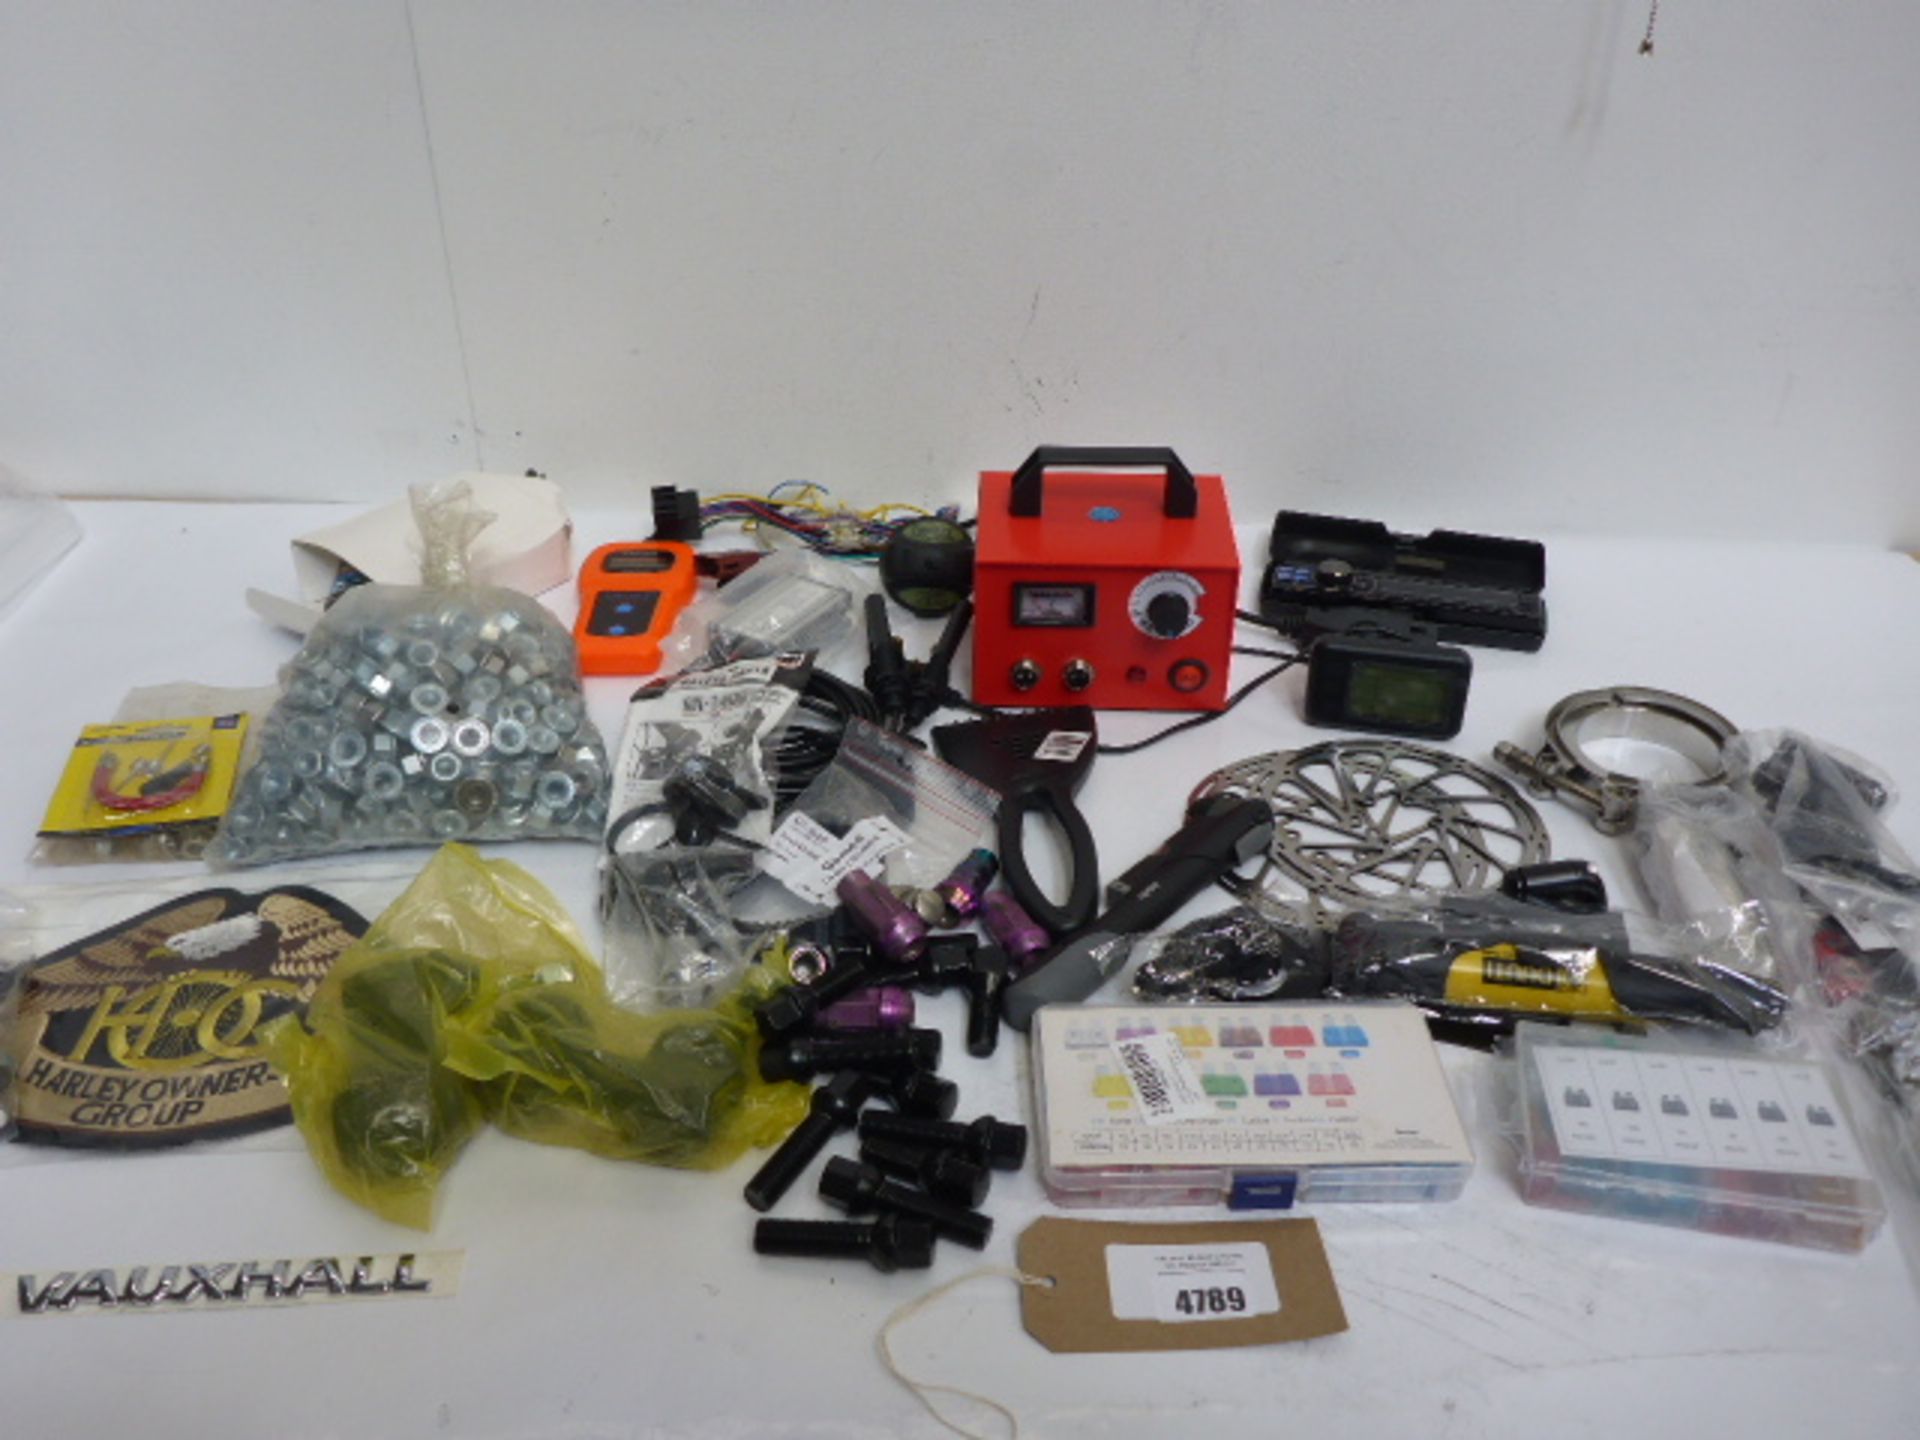 Bike sprockets, Harley Davidson badge, car reflectors, large bag of assorted nuts, belts, small